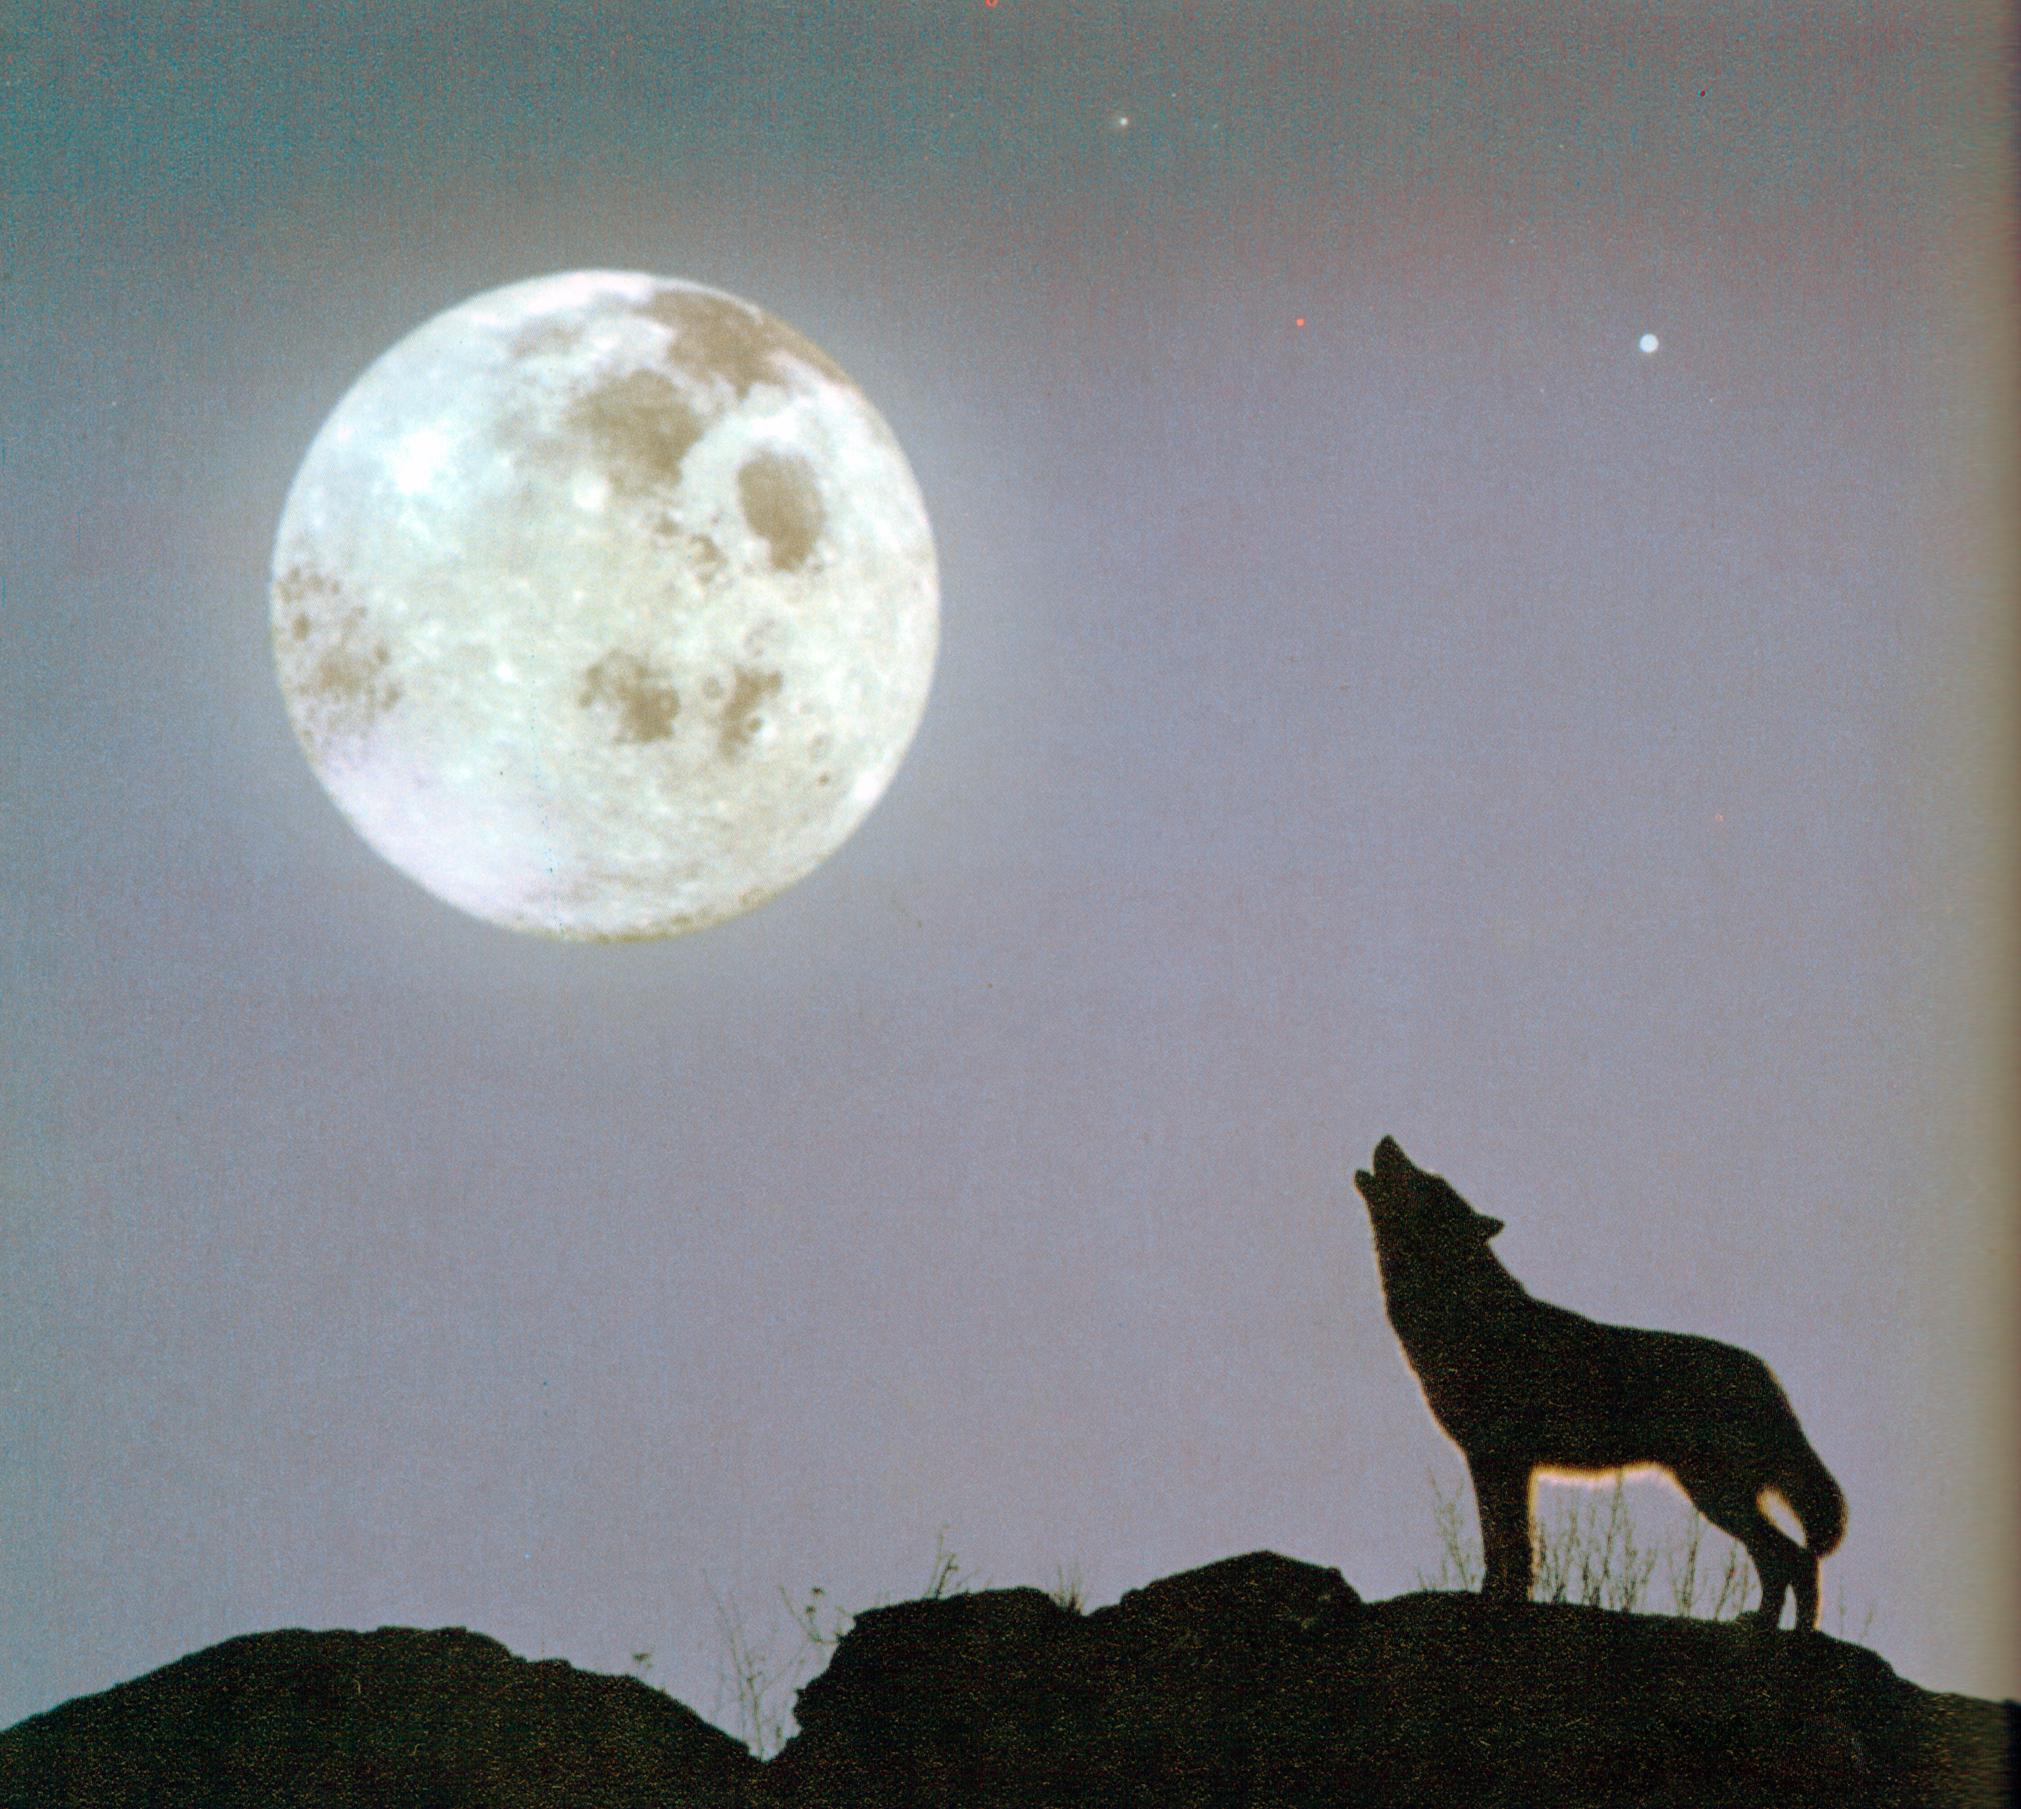 wolf moon